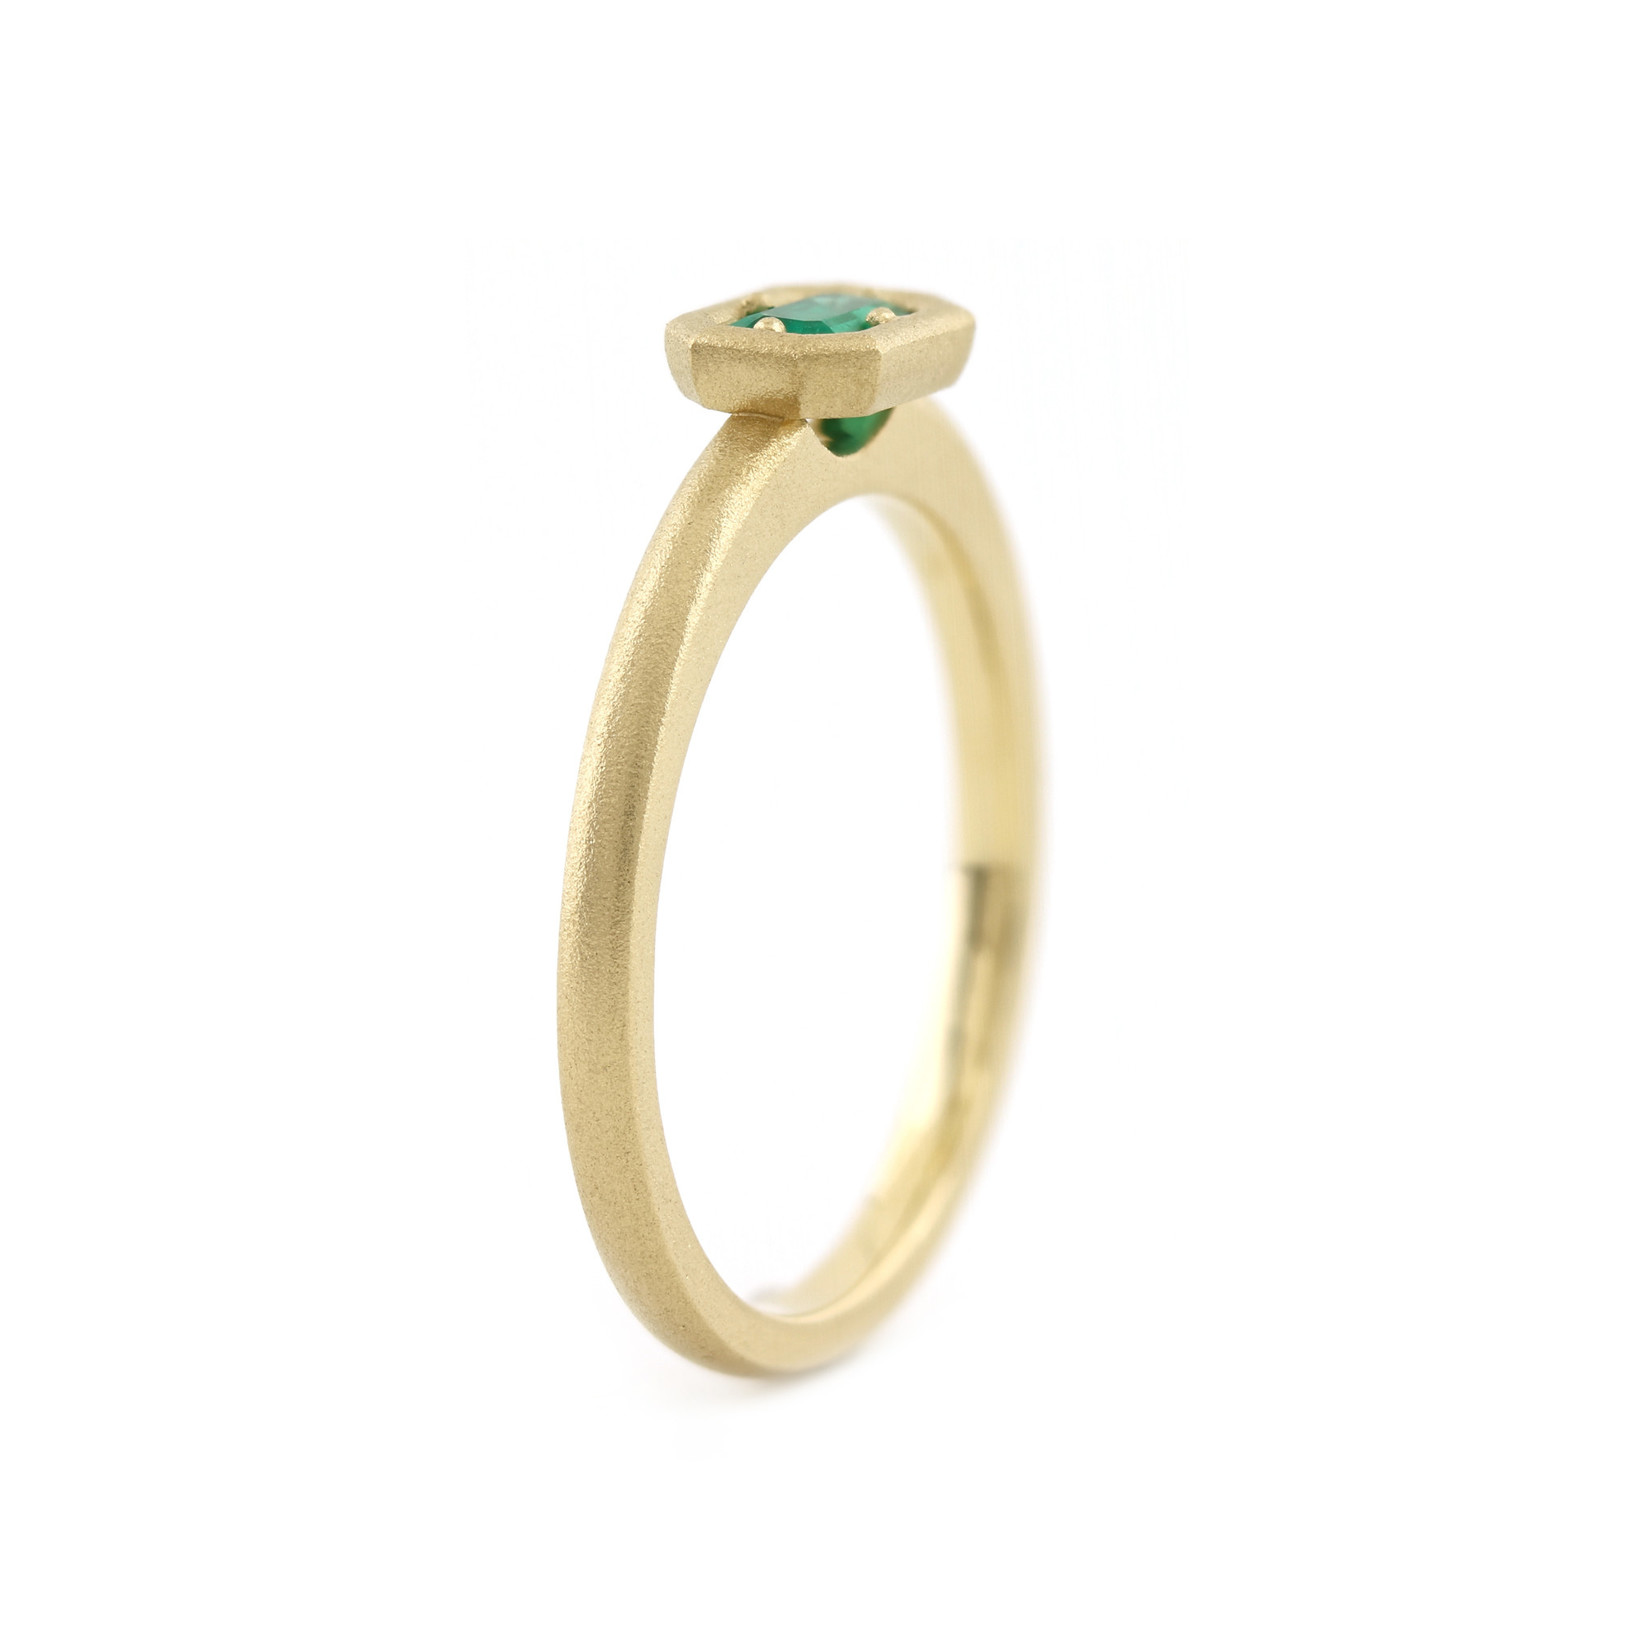 Baxter Moerman Anika Ring in 0.30ct Emerald